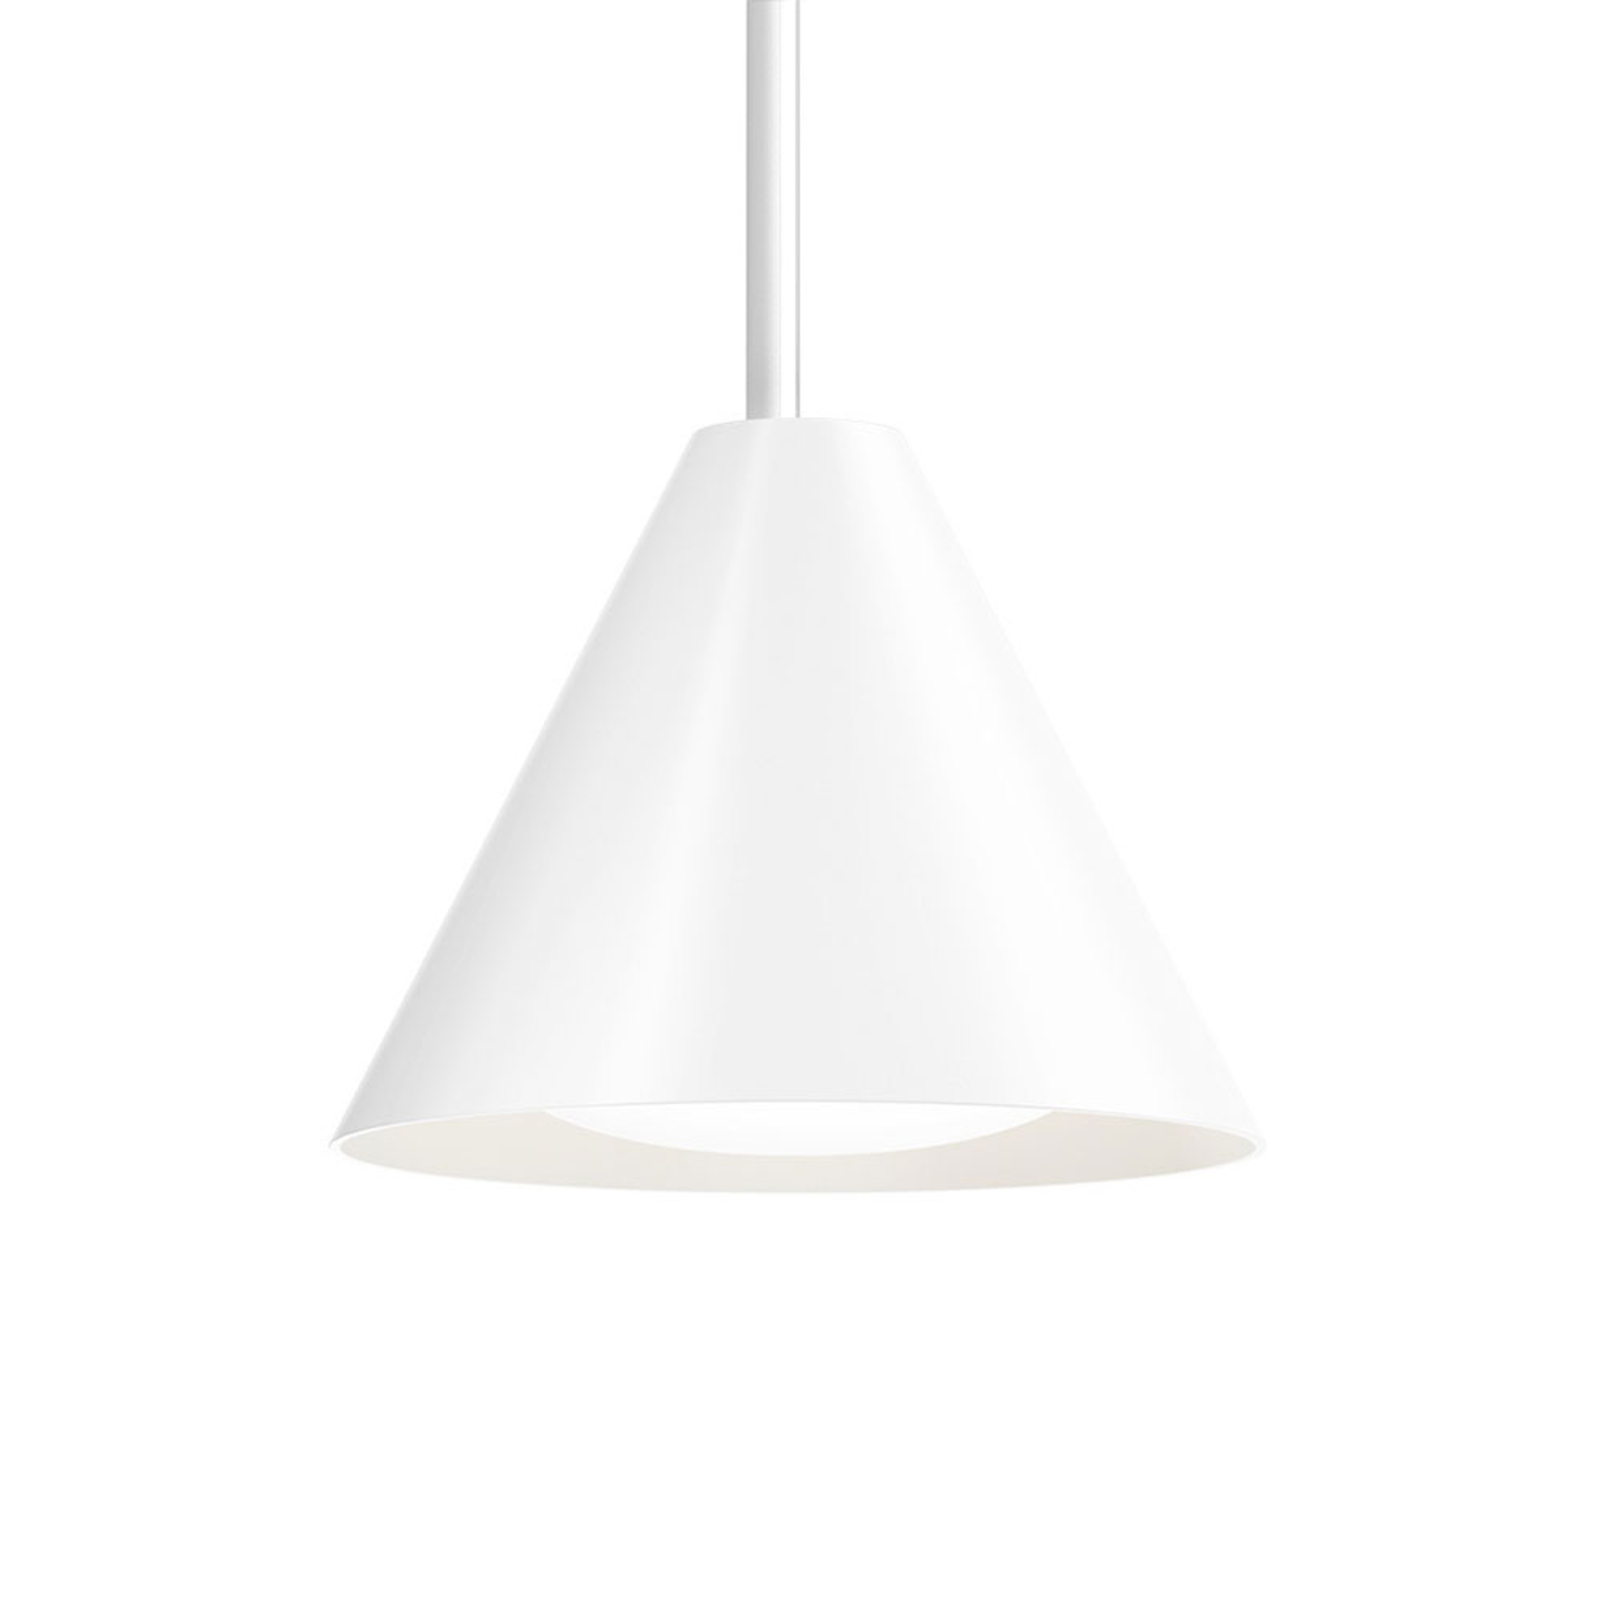 Louis Poulsen Keglen lampa wisząca 17,5 LED biała